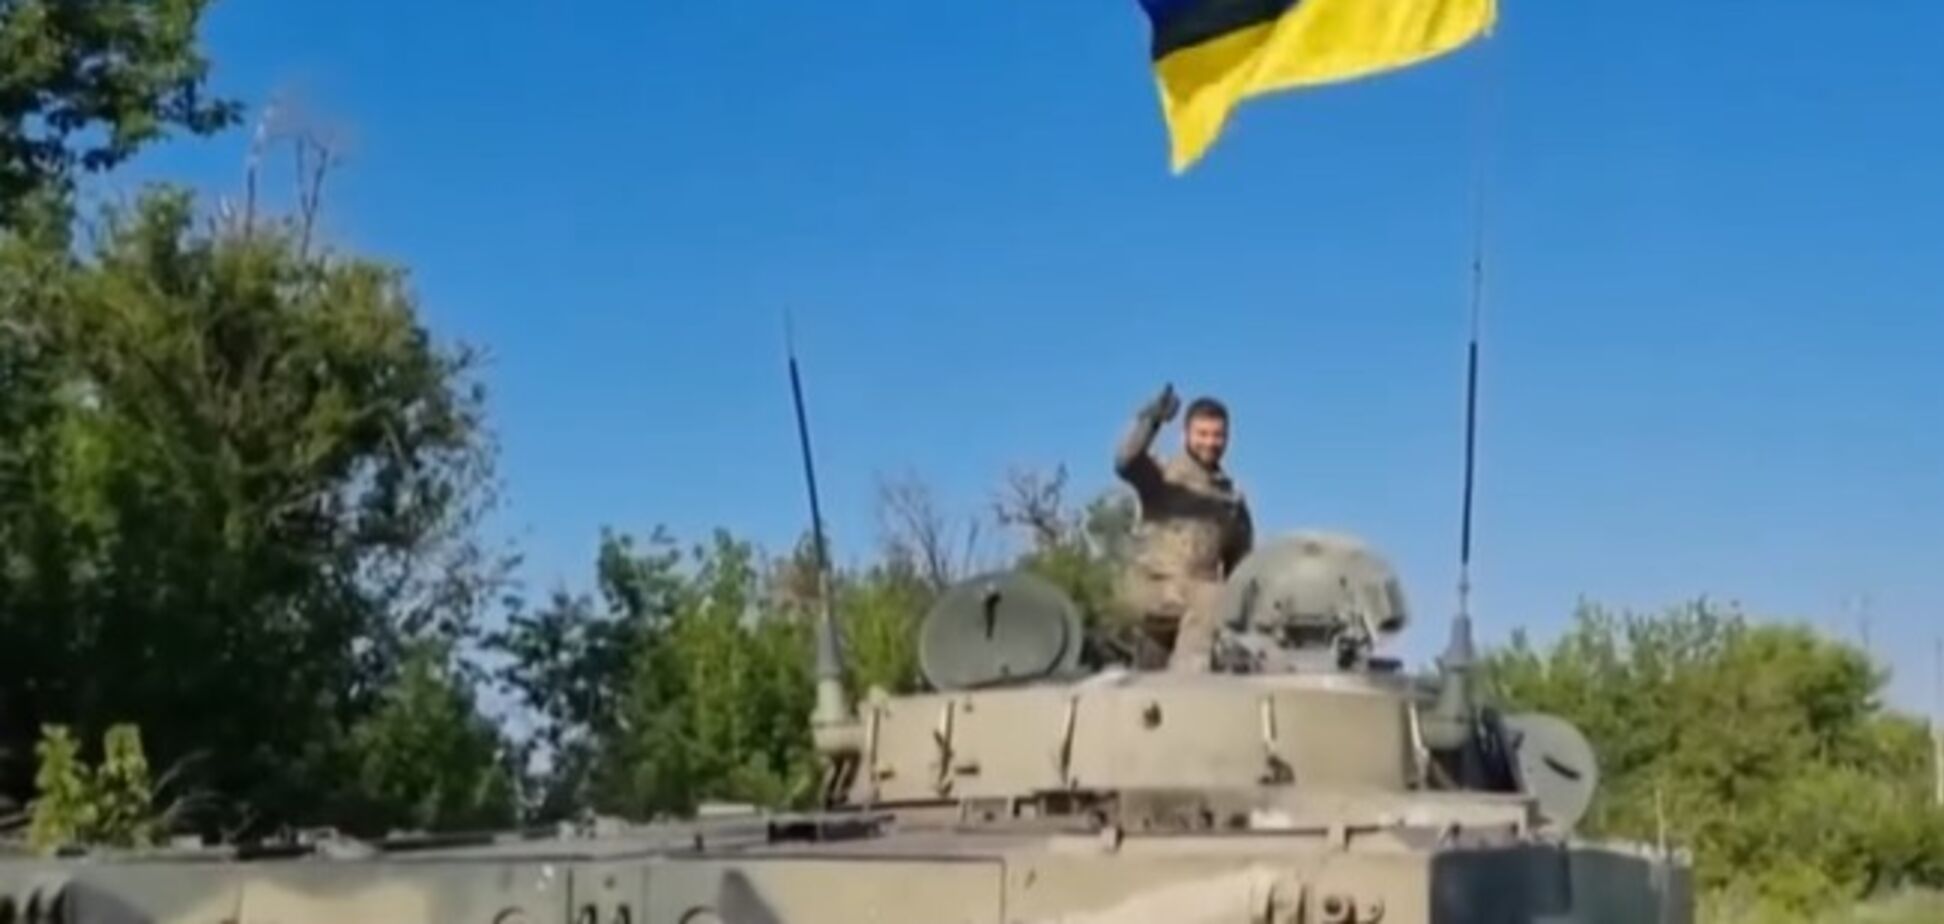 Защитники Украины угнали БМП-3 из-под носа у оккупантов